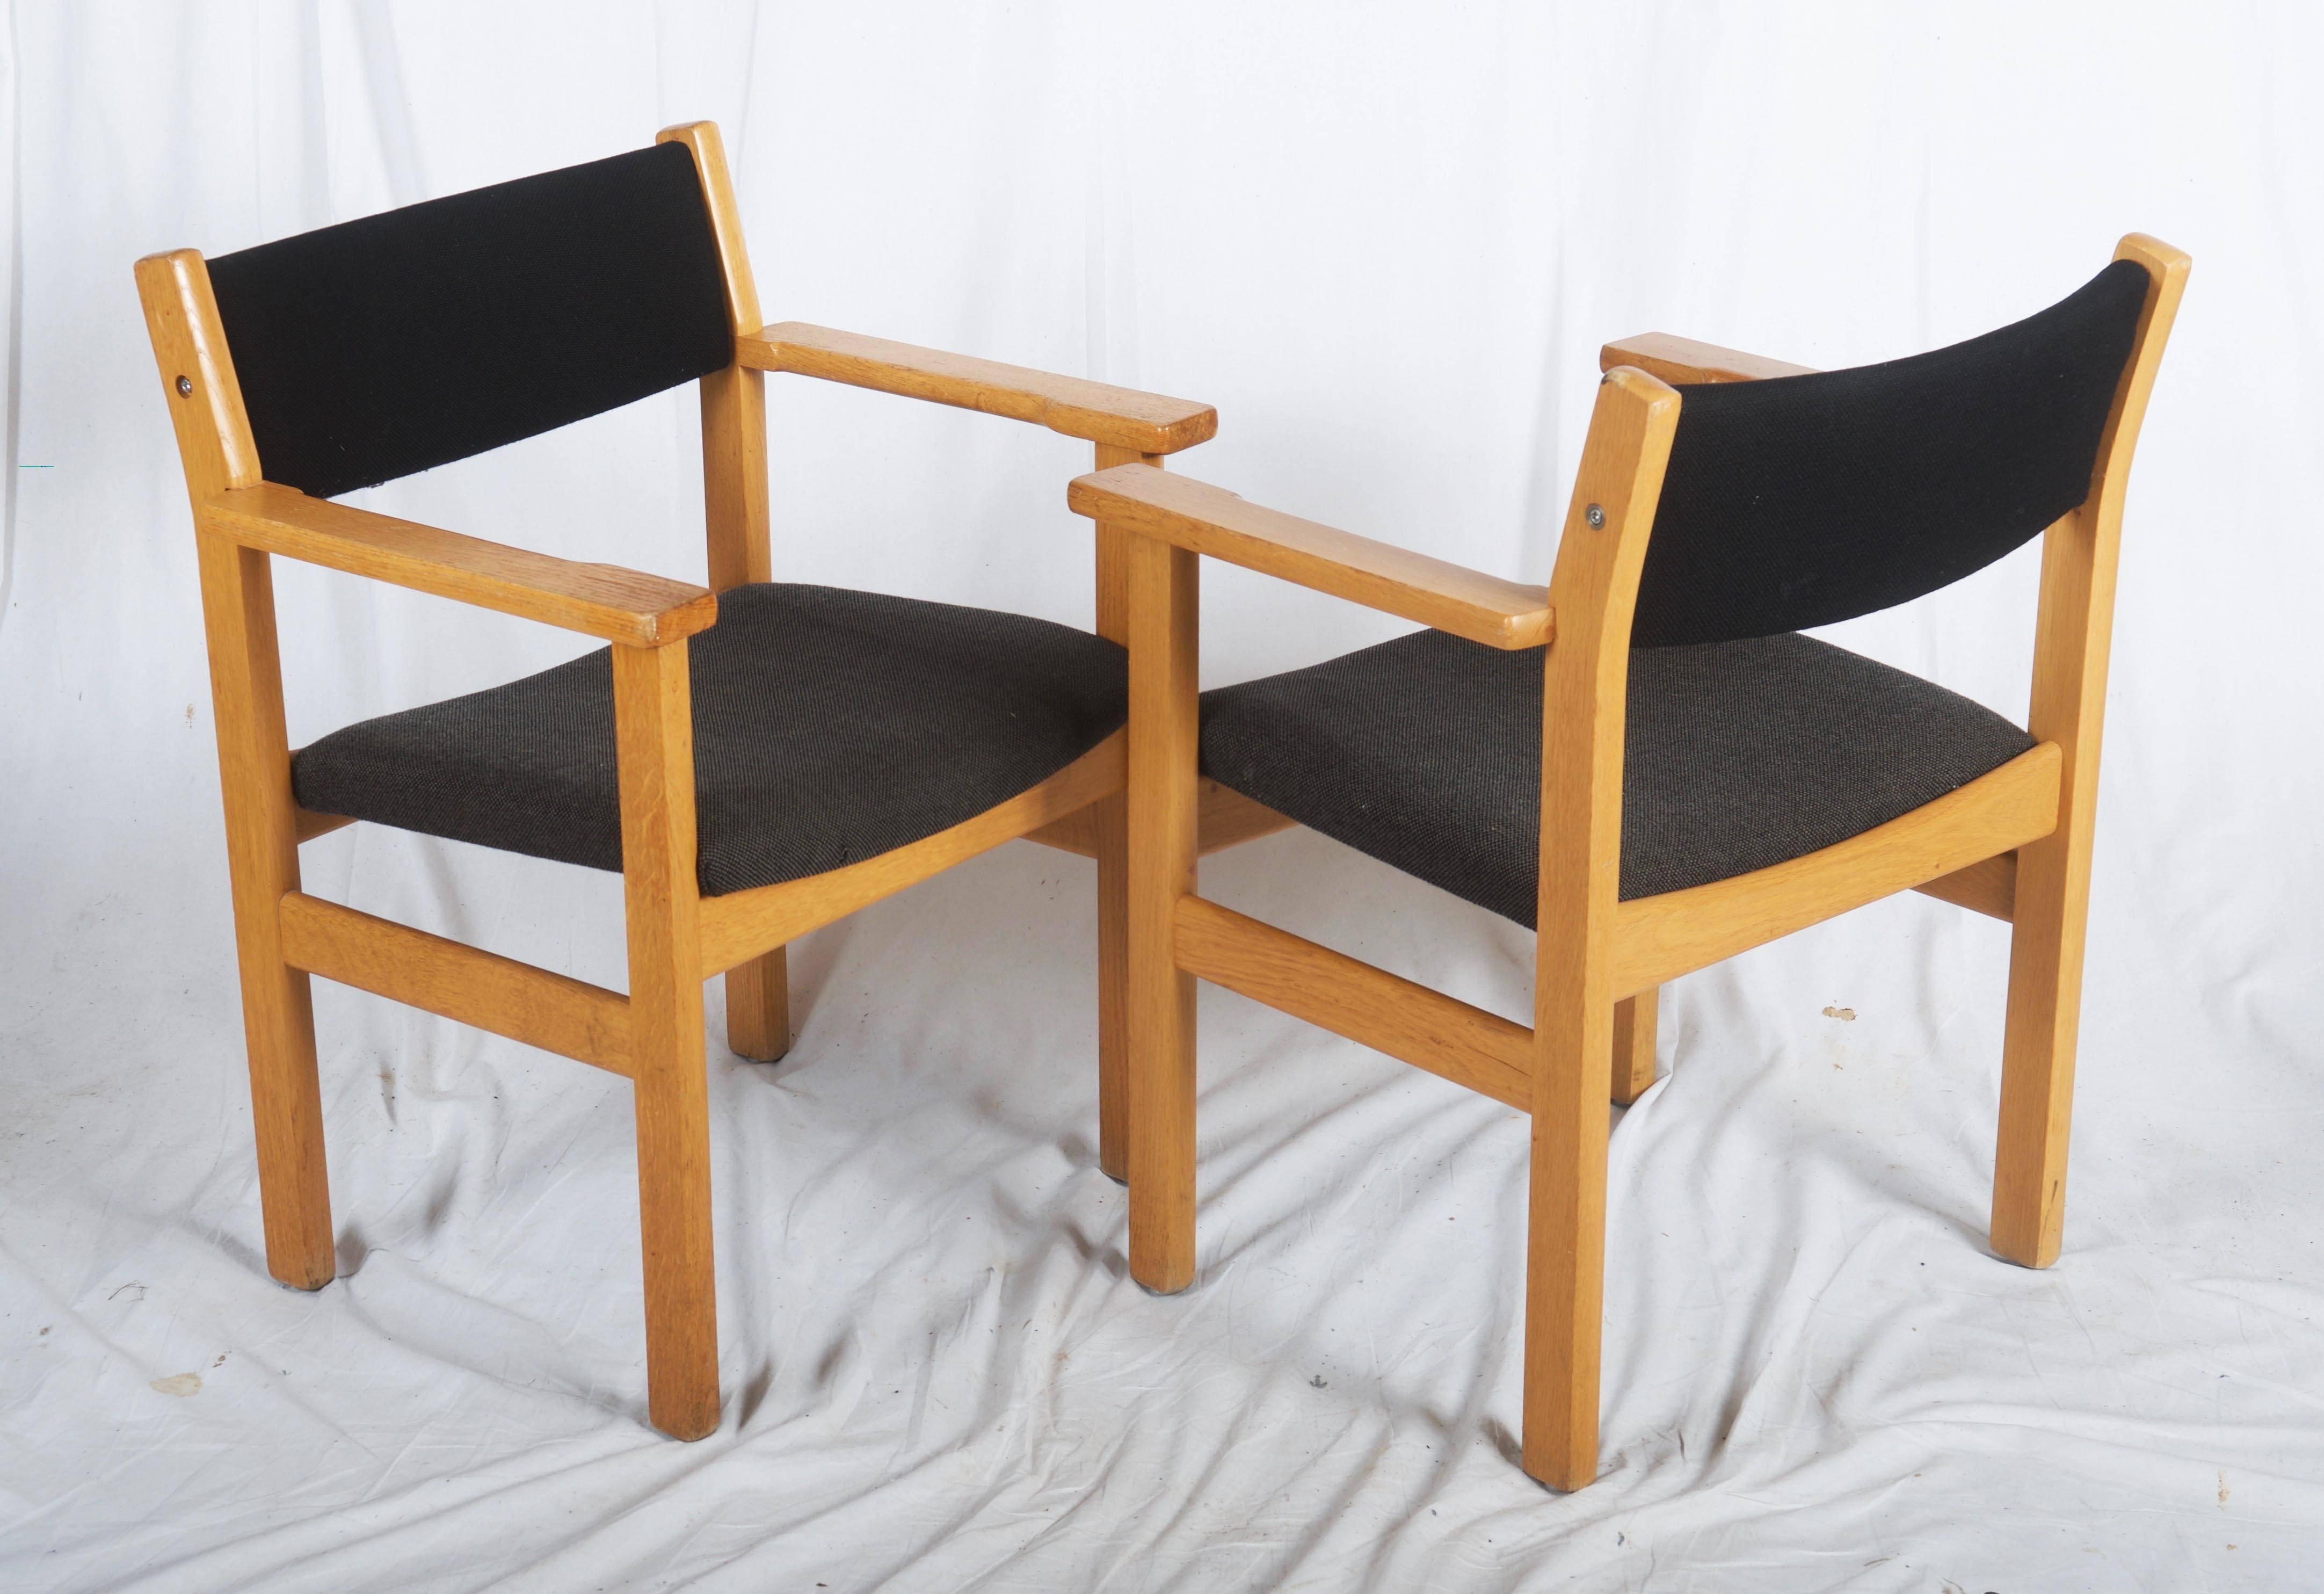 Fauteuils danois conçus par Hans Wegner pour GETAMA, Danemark. 
Les chaises sont fabriquées en chêne massif et recouvertes d'un tissu original. 
Quelques légères éraflures et rayures dues à l'usure normale, mais globalement en bon état. Le tissu